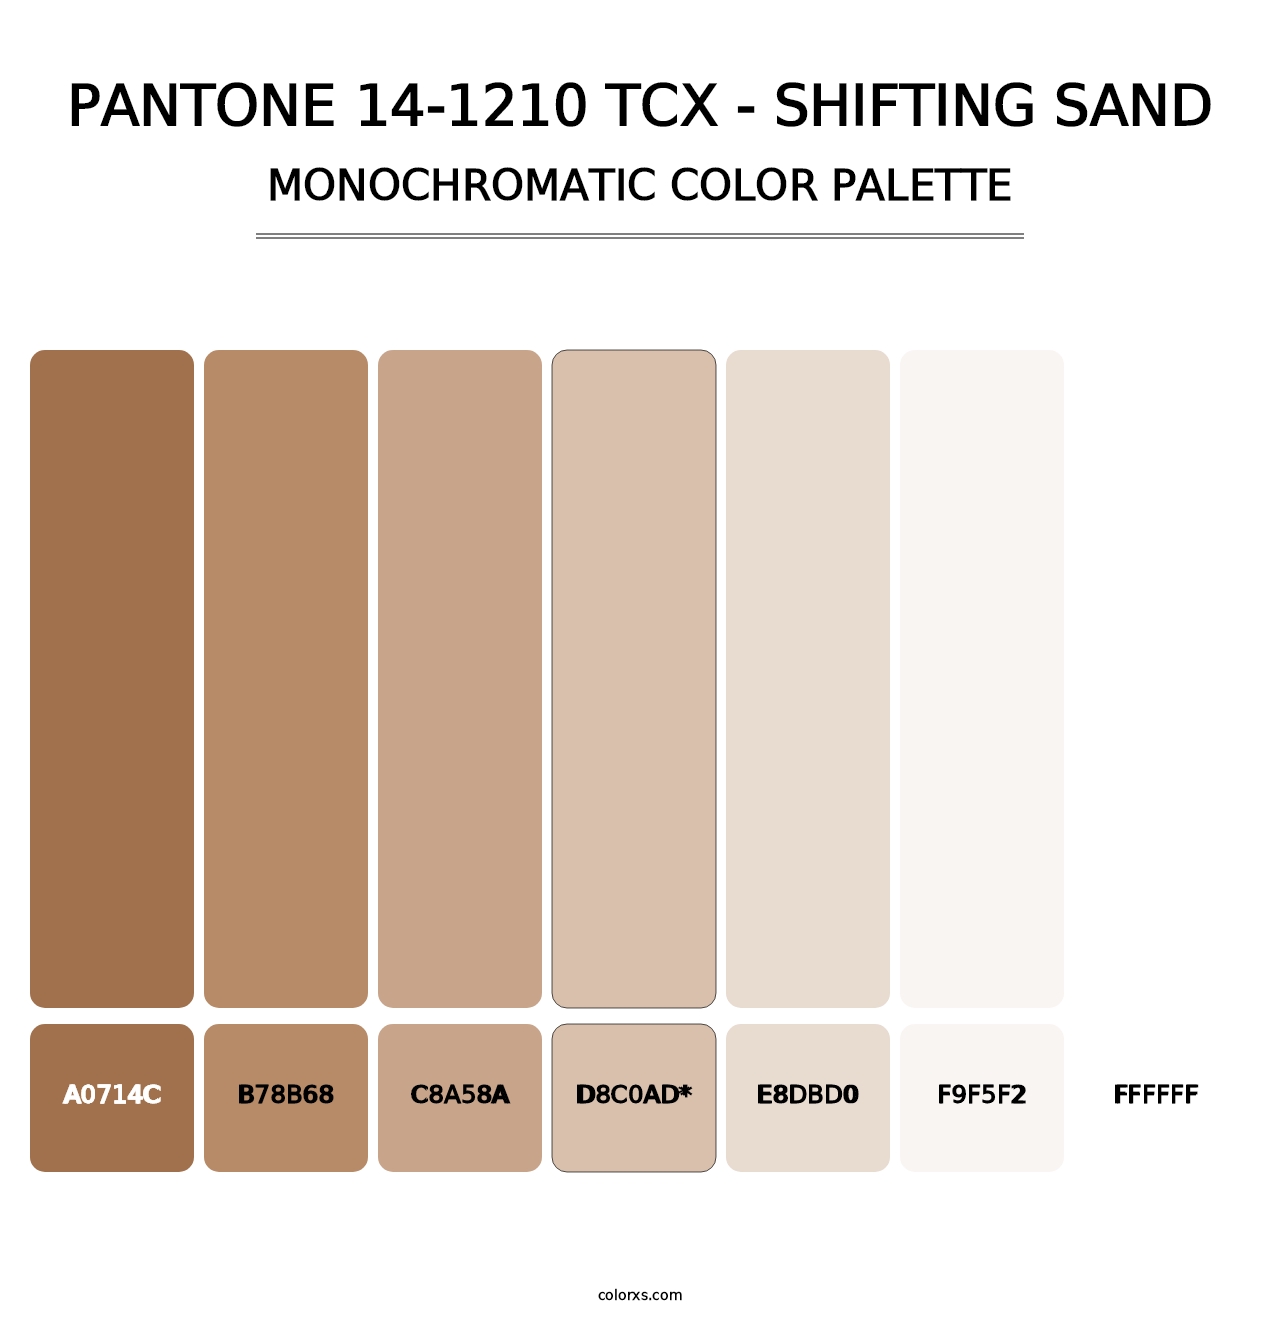 PANTONE 14-1210 TCX - Shifting Sand - Monochromatic Color Palette